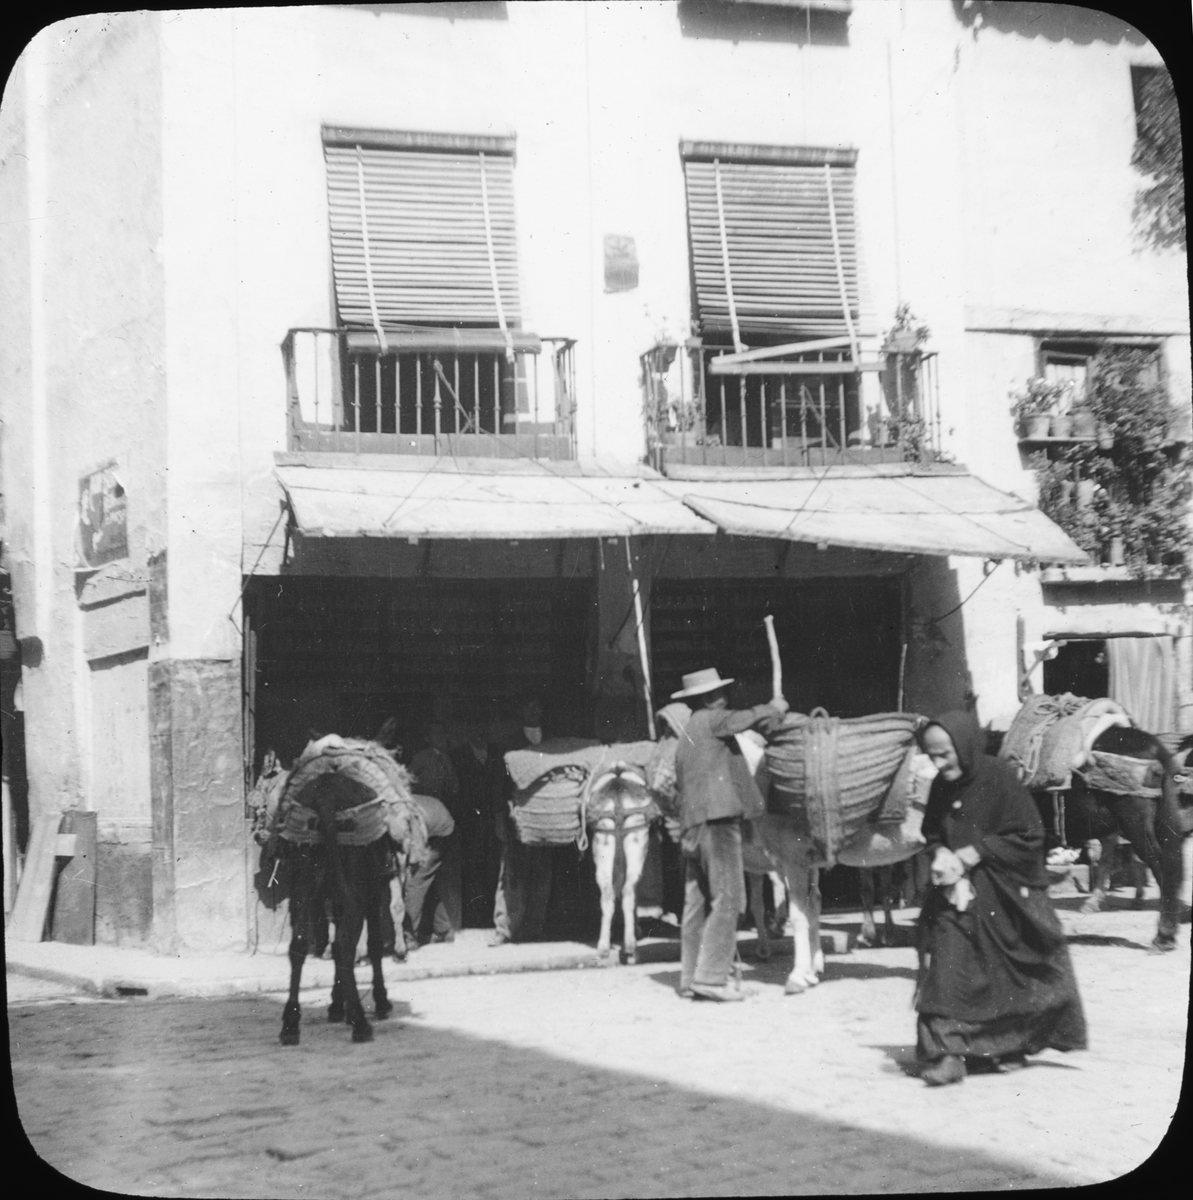 Skioptikonbild med motiv från gata i stadsdelen Posadas, Cordoba.
Bilden har förvarats i kartong märkt: Höstresan 1910. Granada 9. N:7. Text på bild: "Posada".